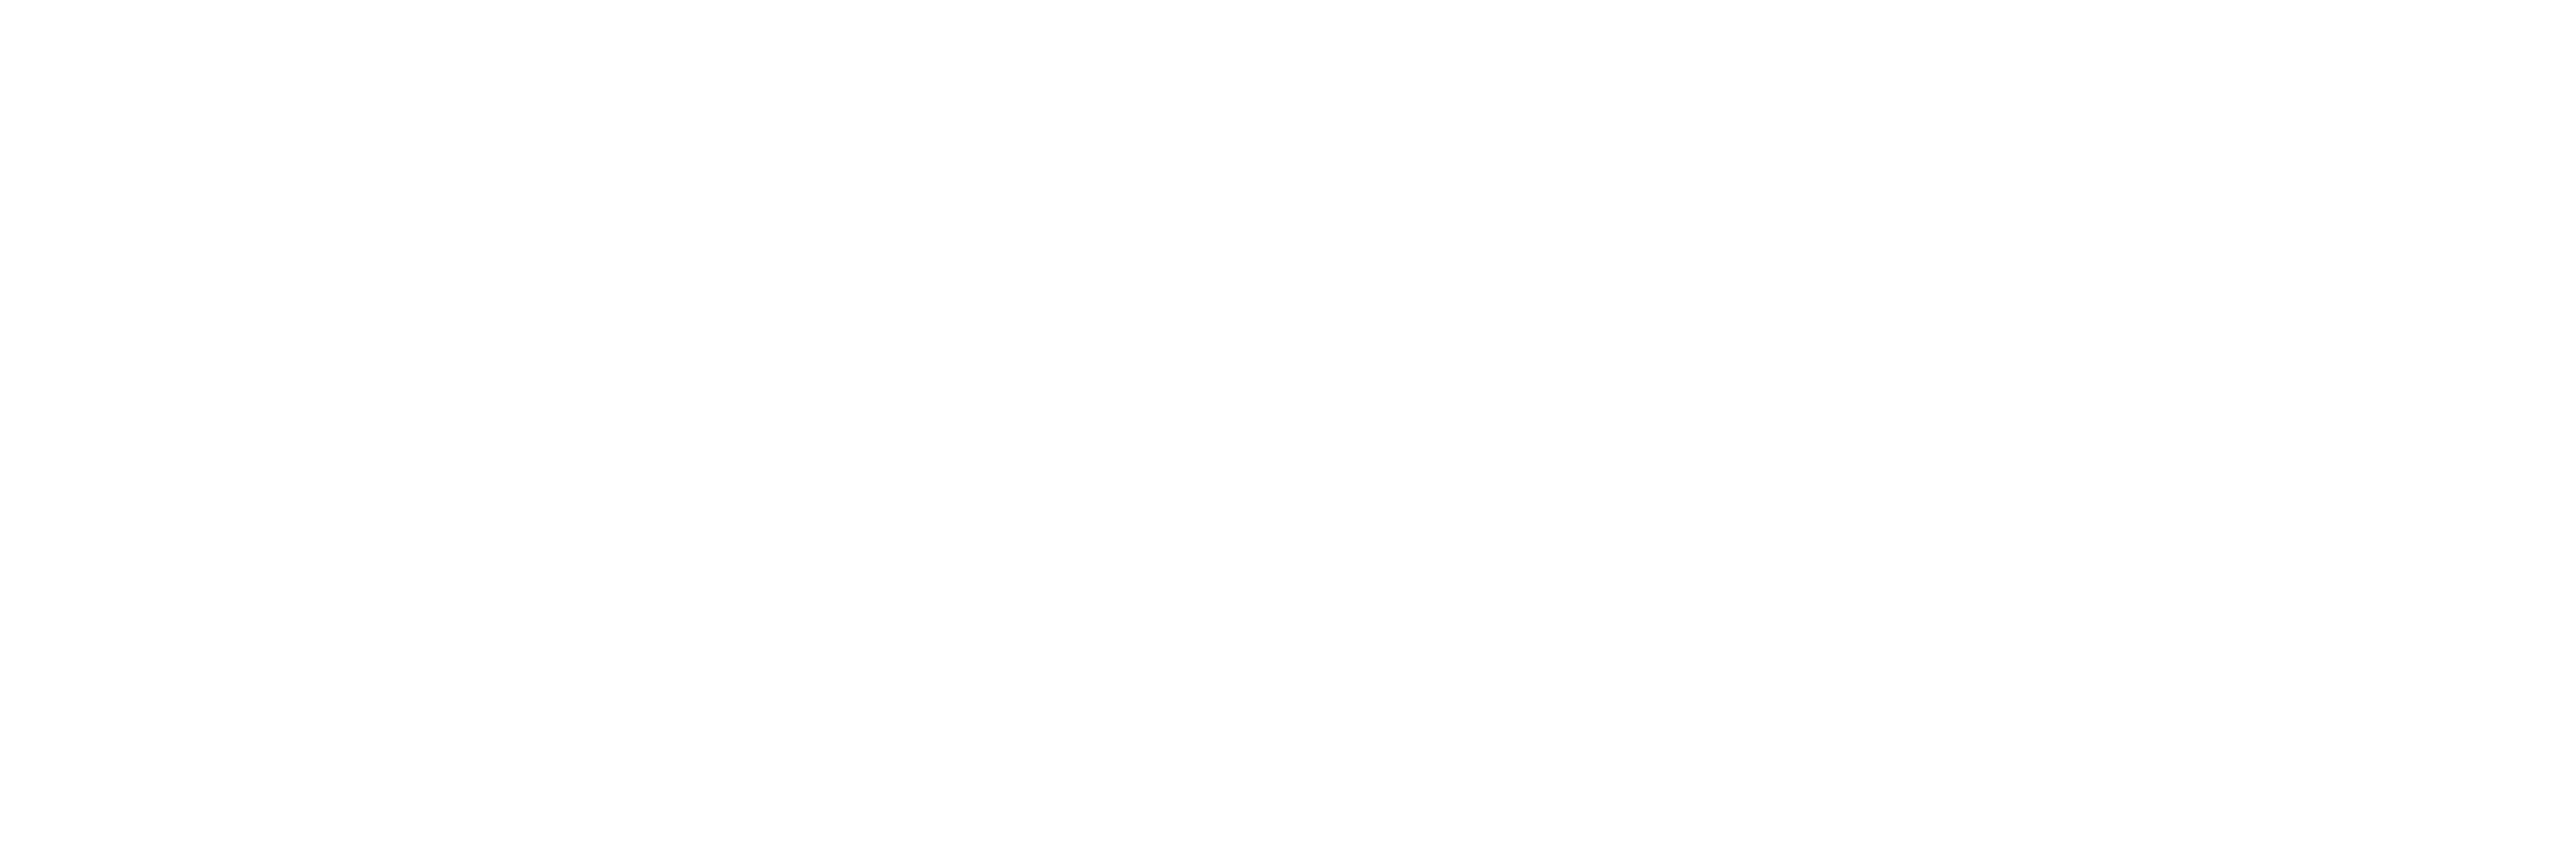 AlignMFG-logo-white